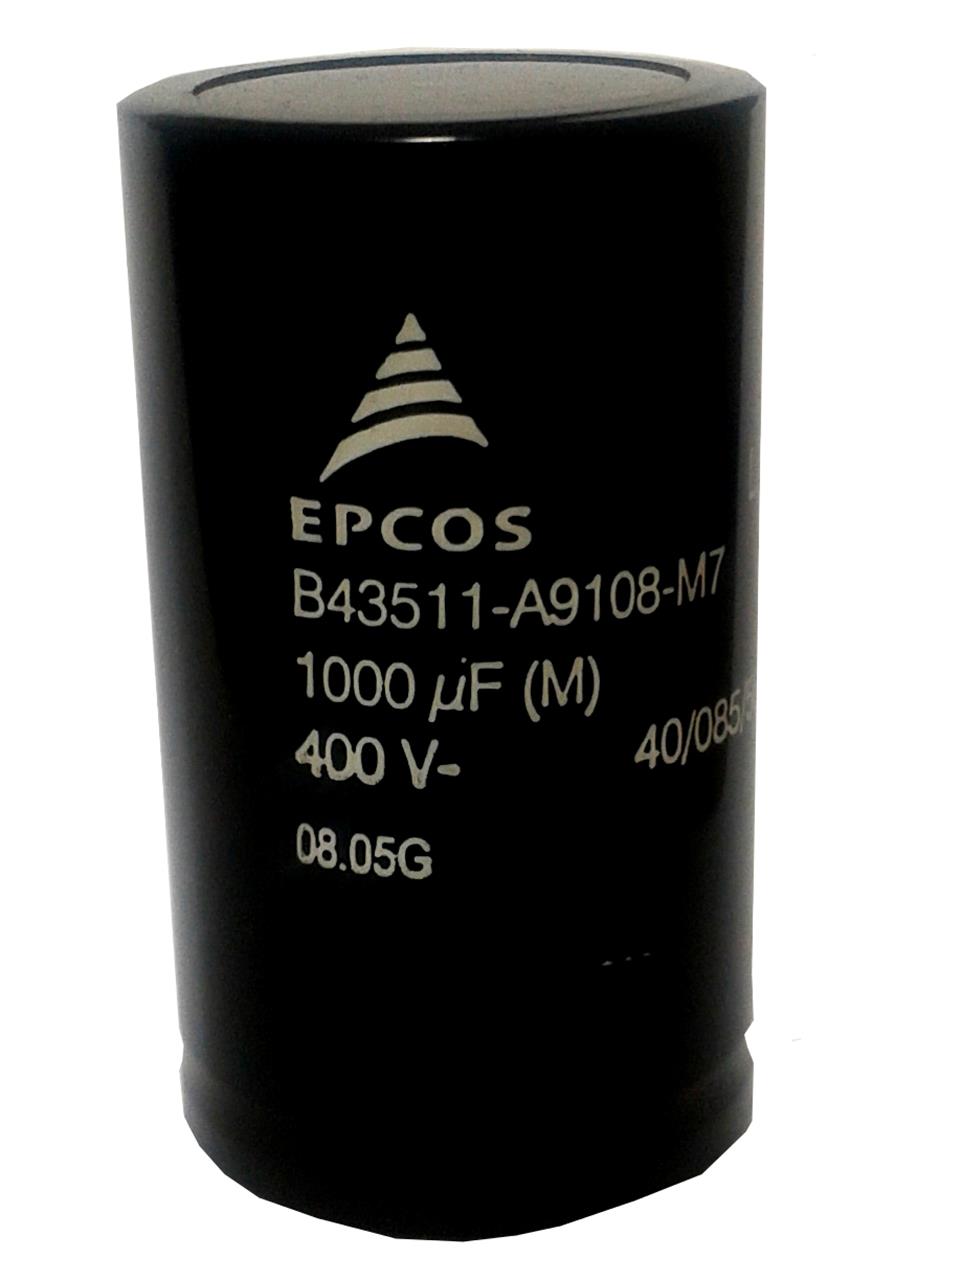 Capacitor 1000uF 400V Epcos